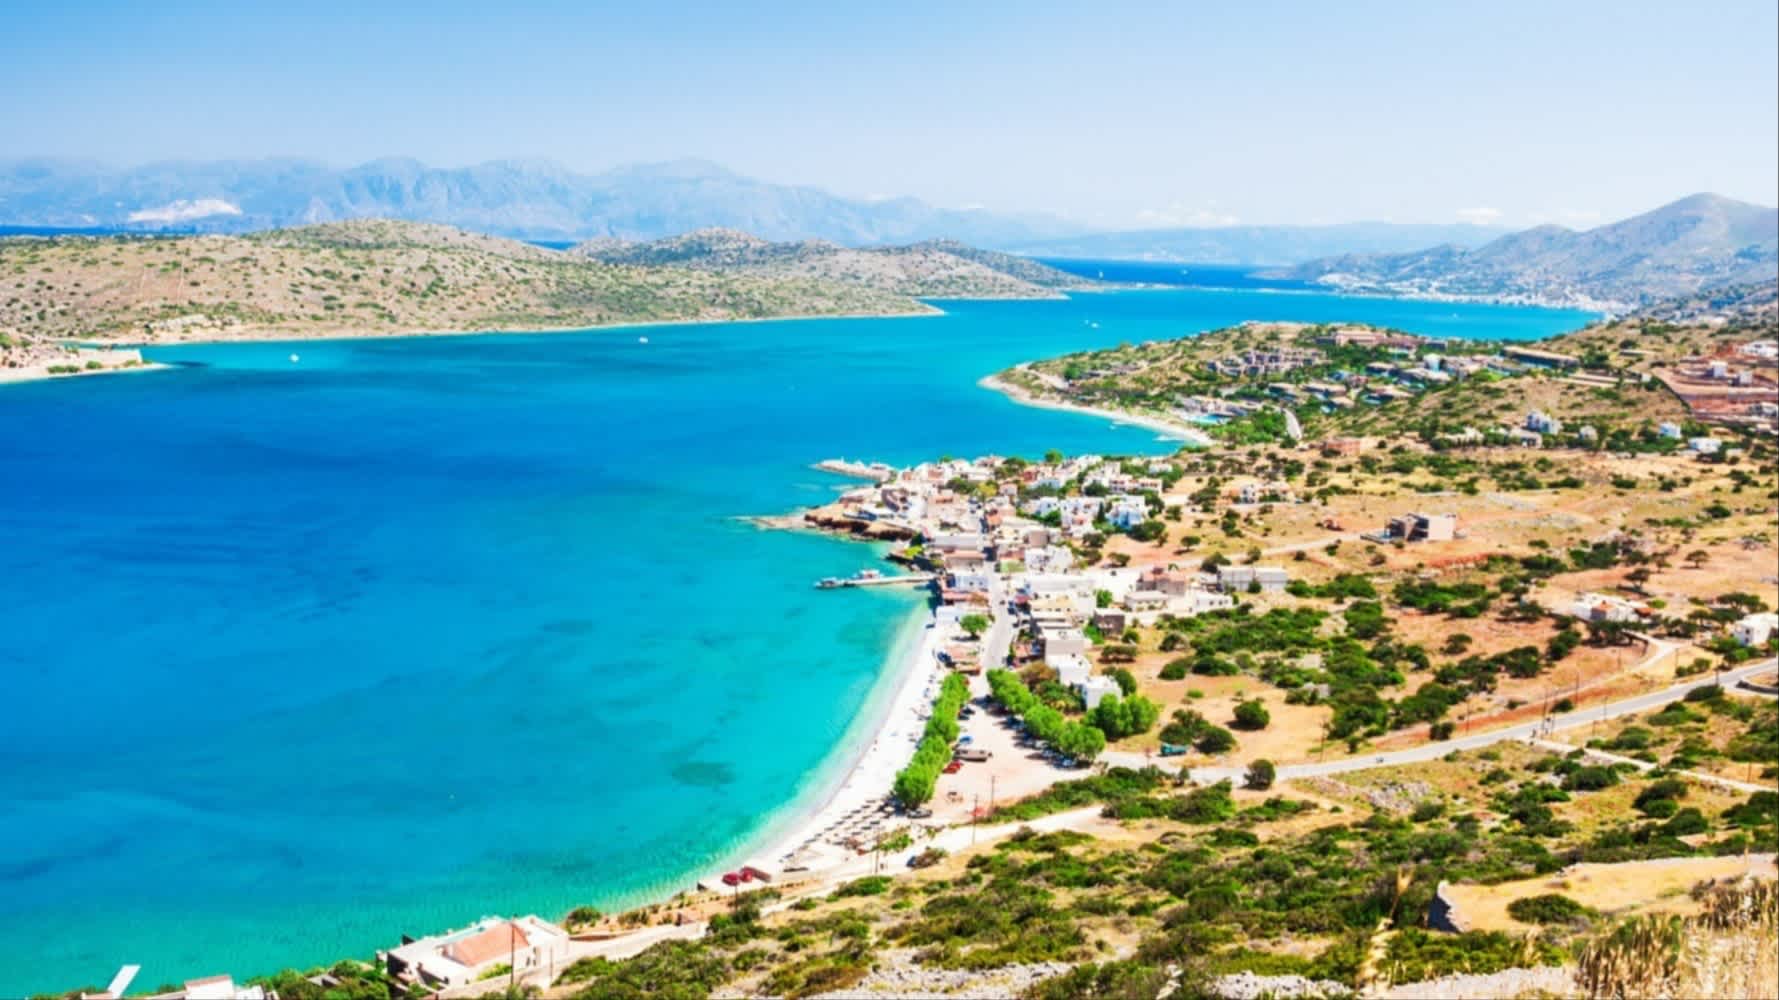 Panoramablick aus der Luft auf die Meeresküste und die Insel Spinalonga in Elounda, Kreta, Griechenland.

